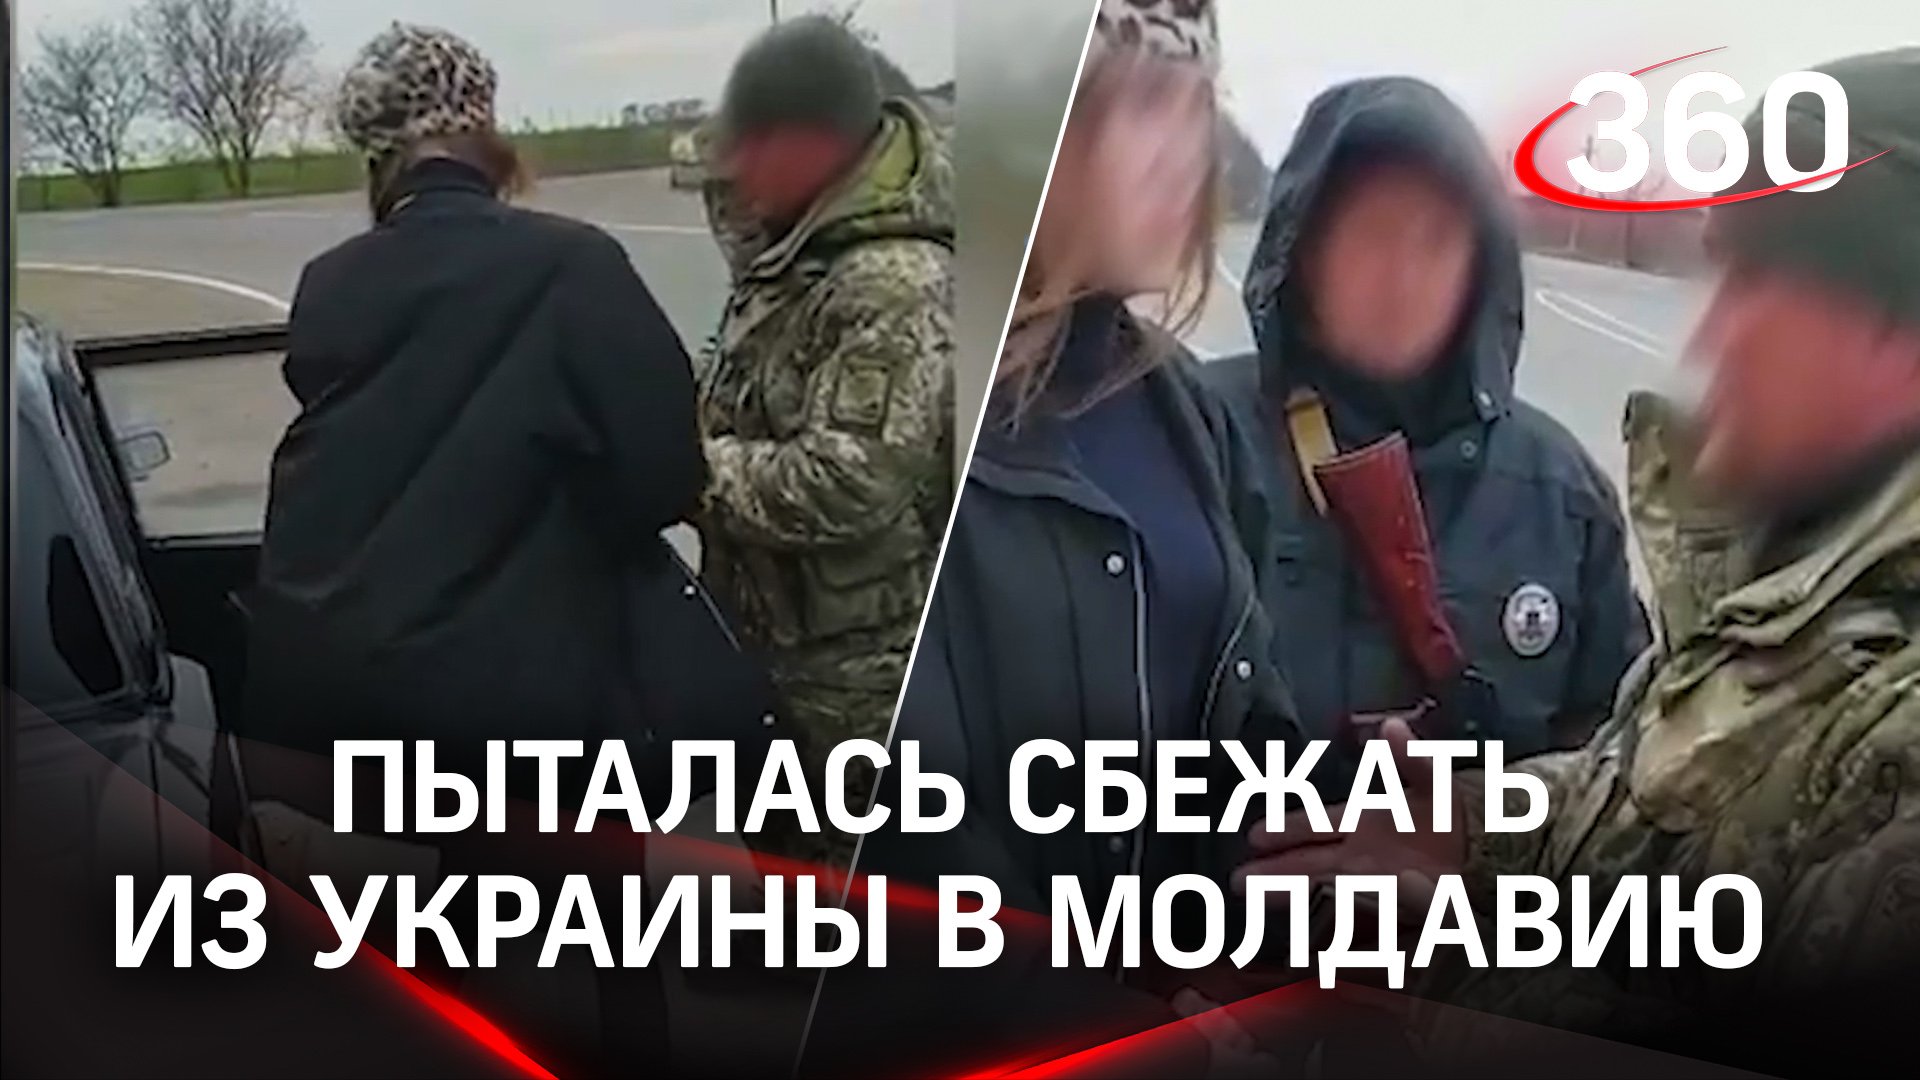 «Мадам-офицер» в леопардовой беретке пыталась сбежать из Украины в Молдавию